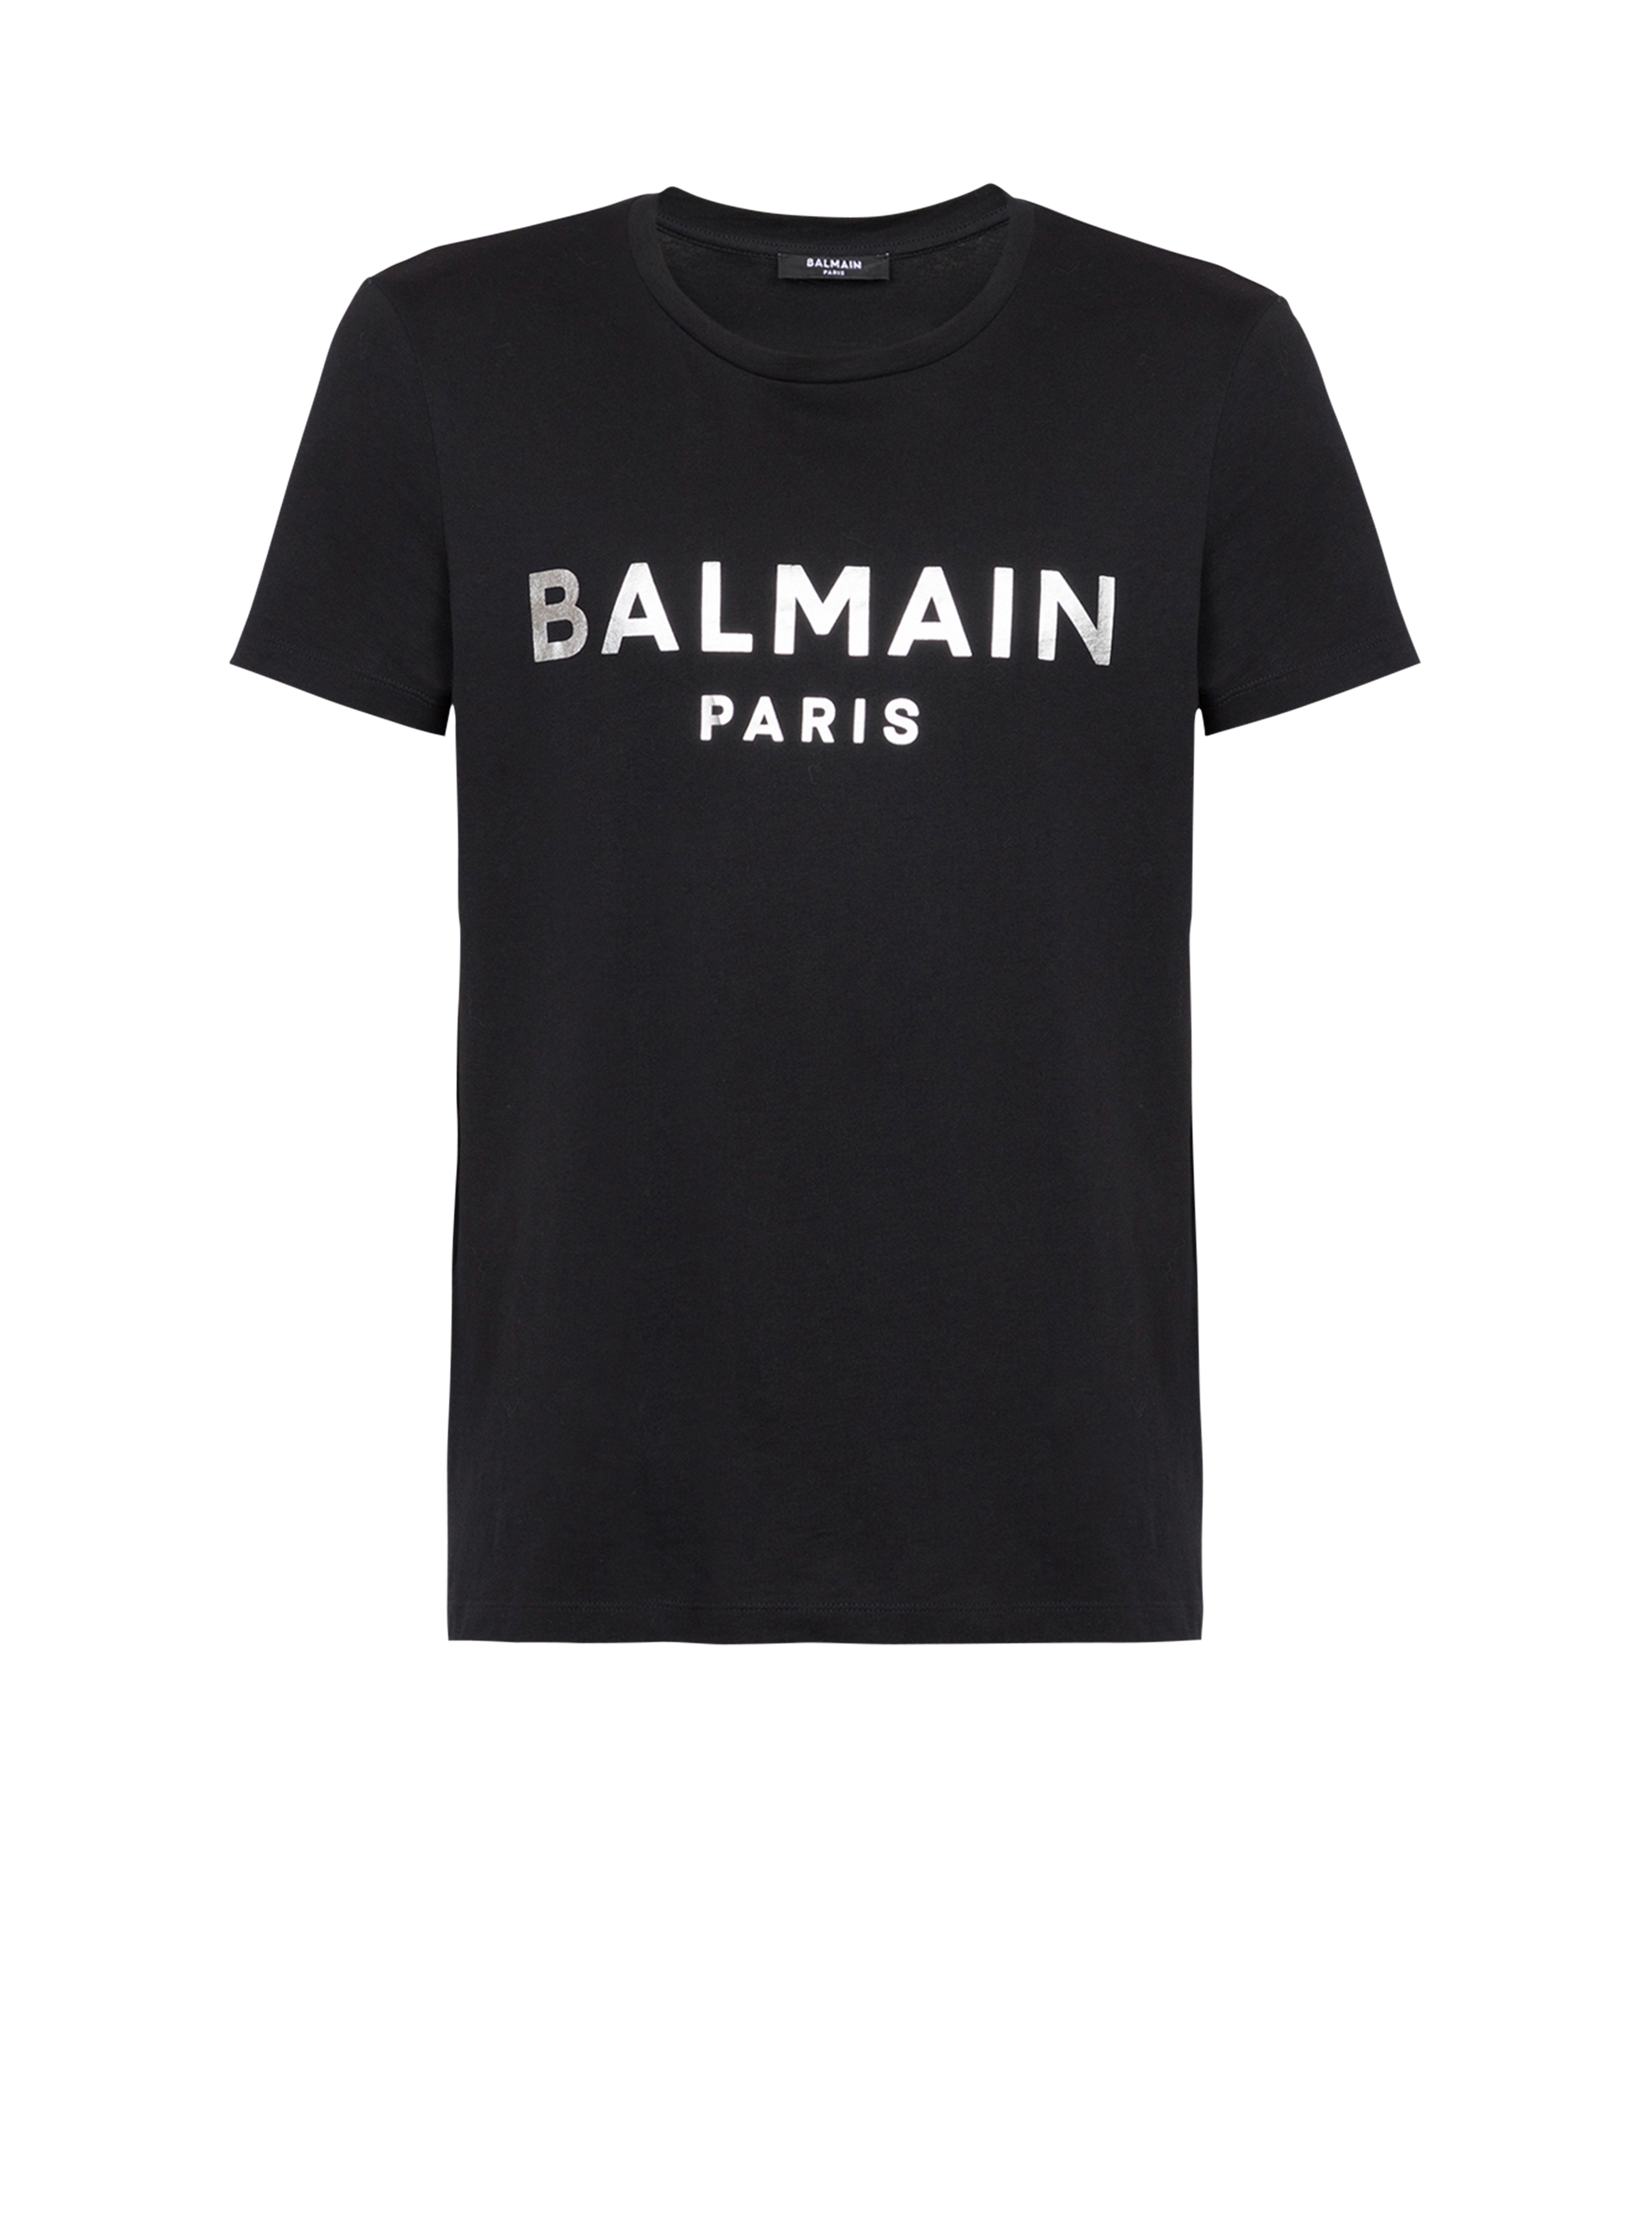 Camiseta de algodón con estampado del logotipo Balmain Paris, plata